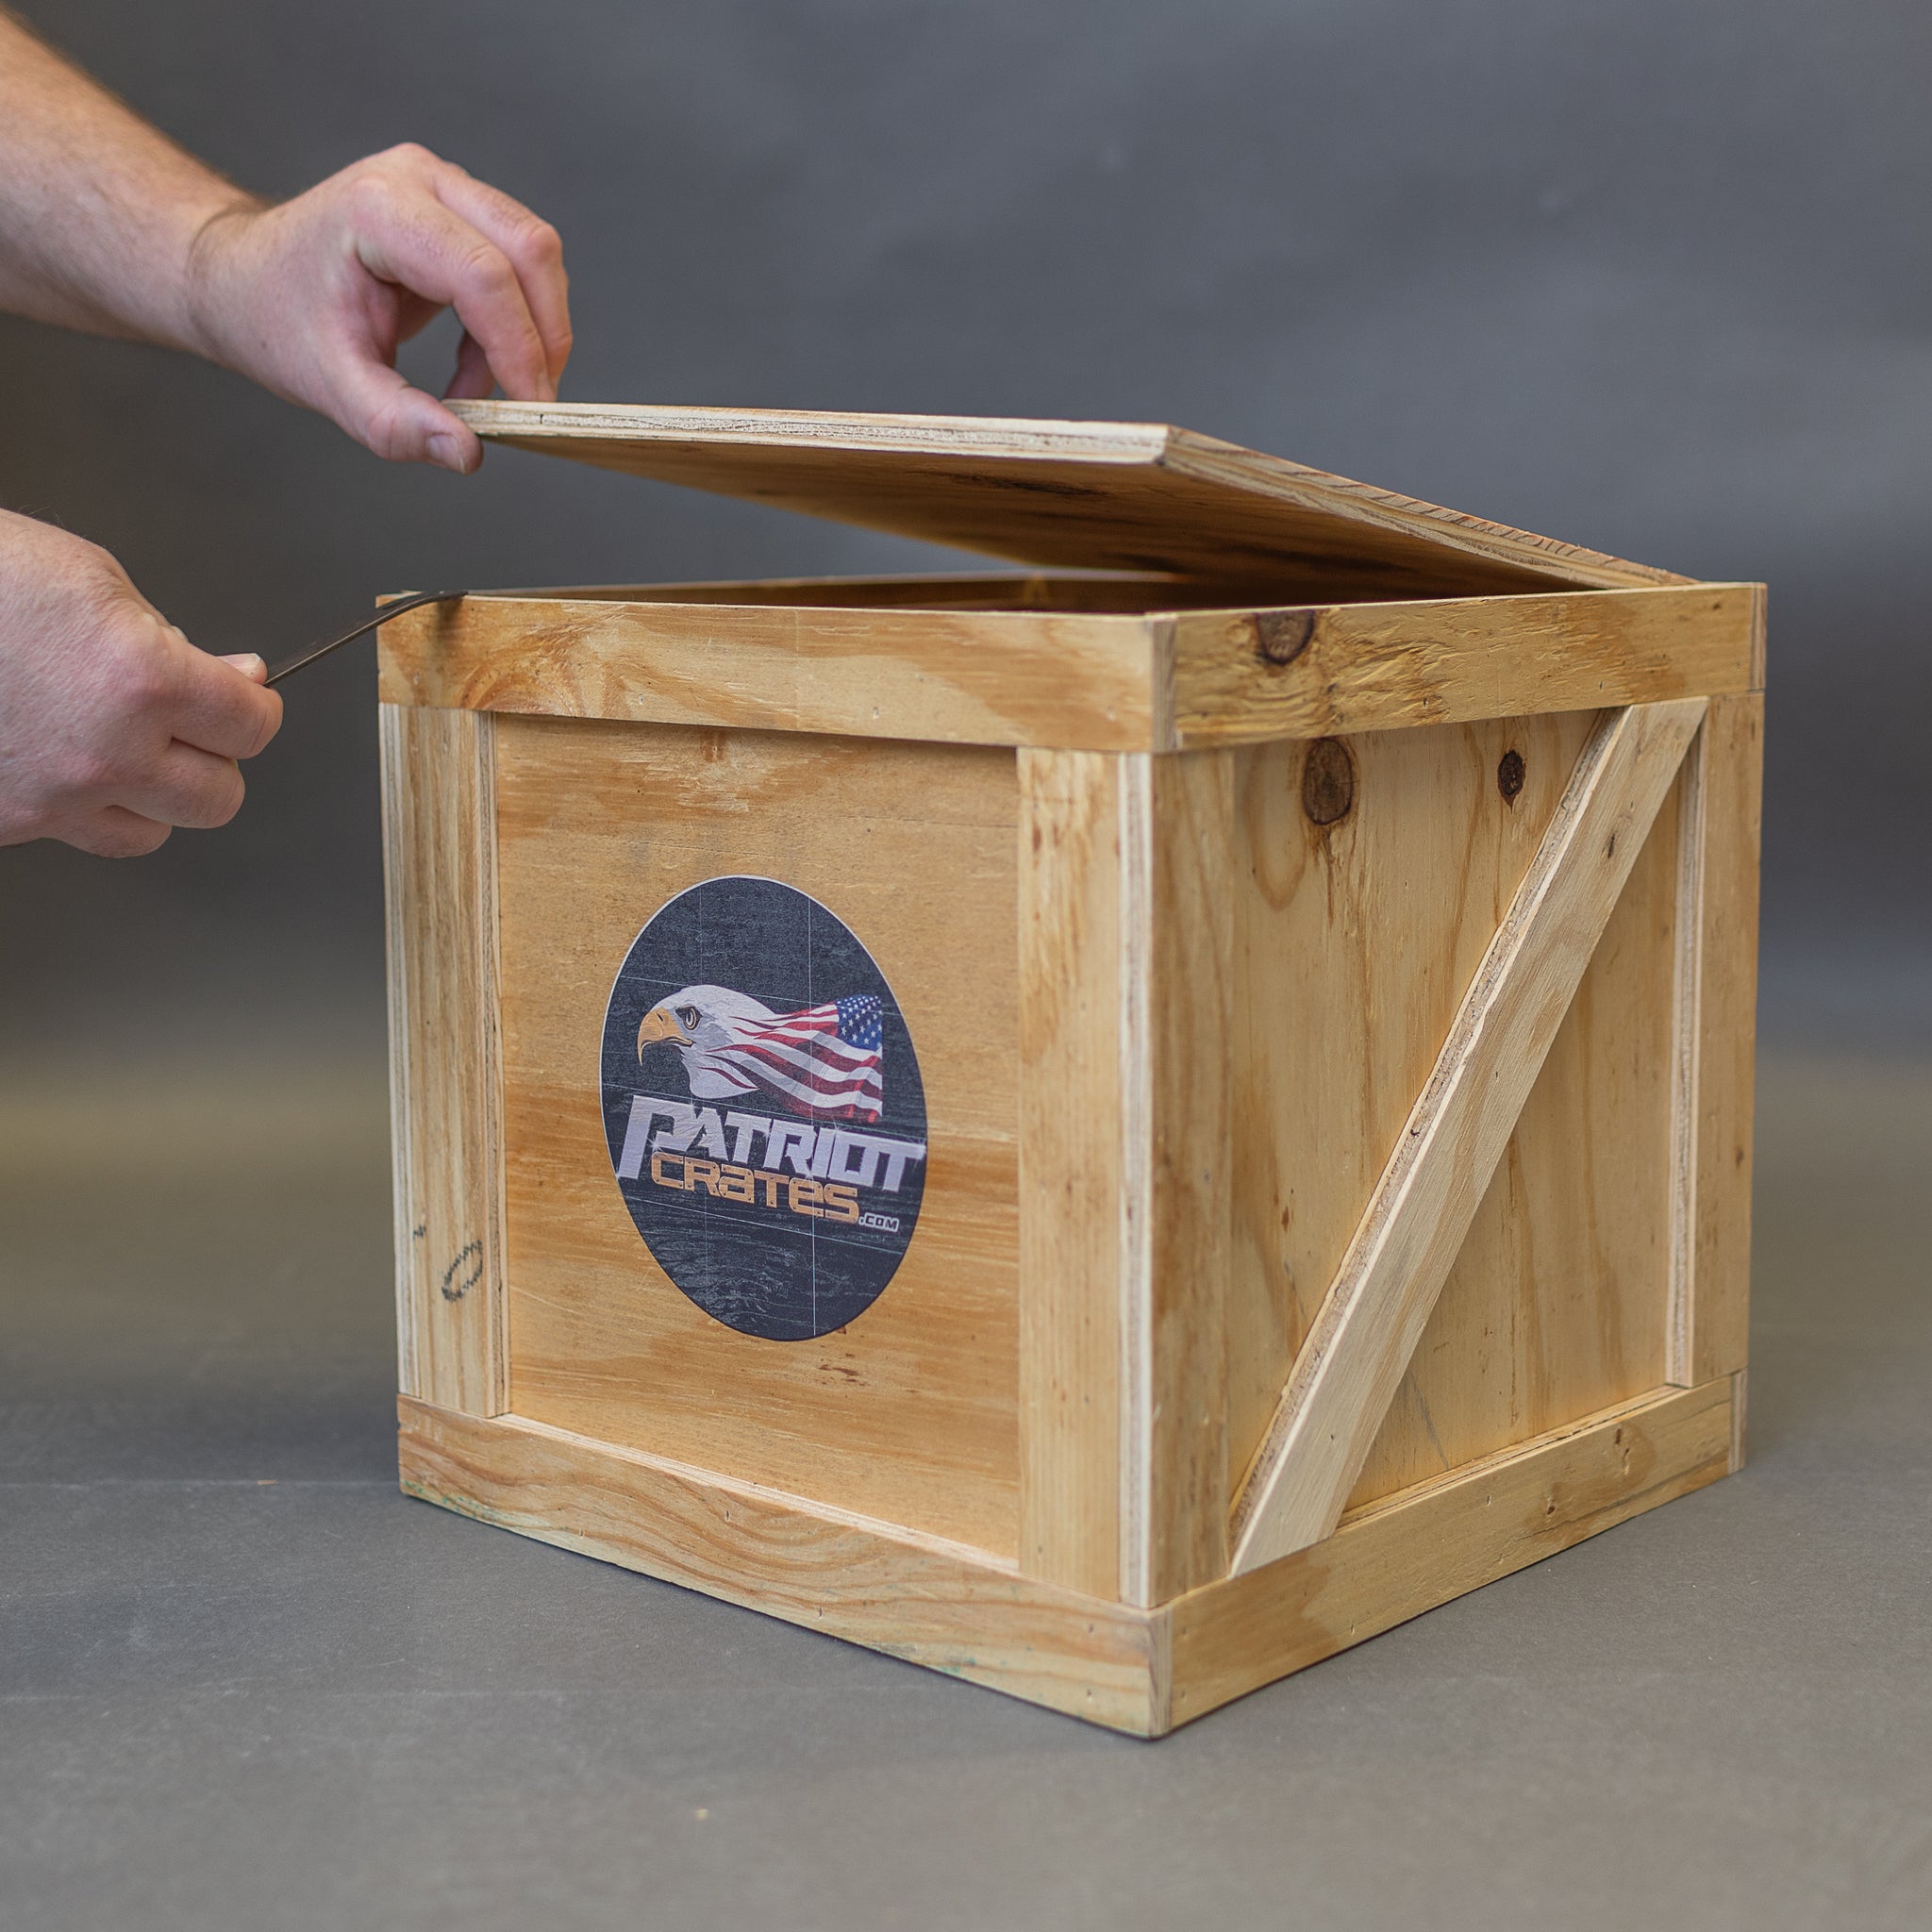 The Original Patriot Crate